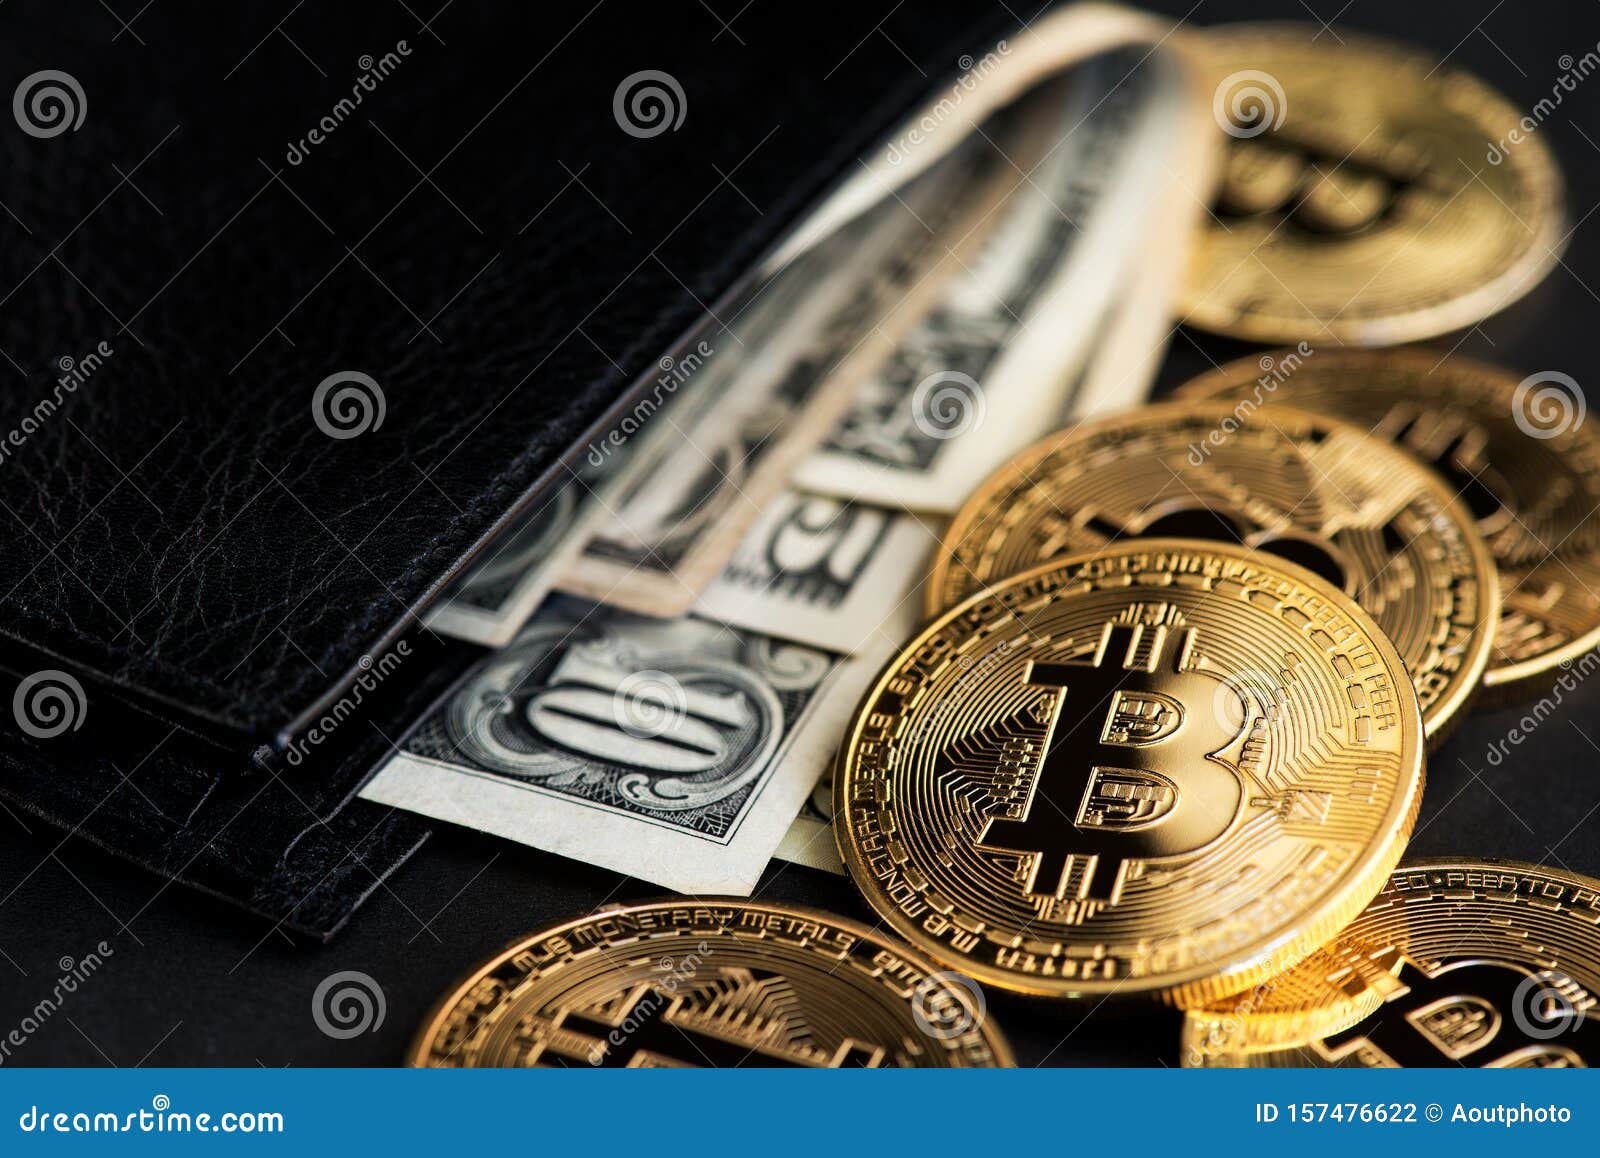 bitcoin virtual wallet